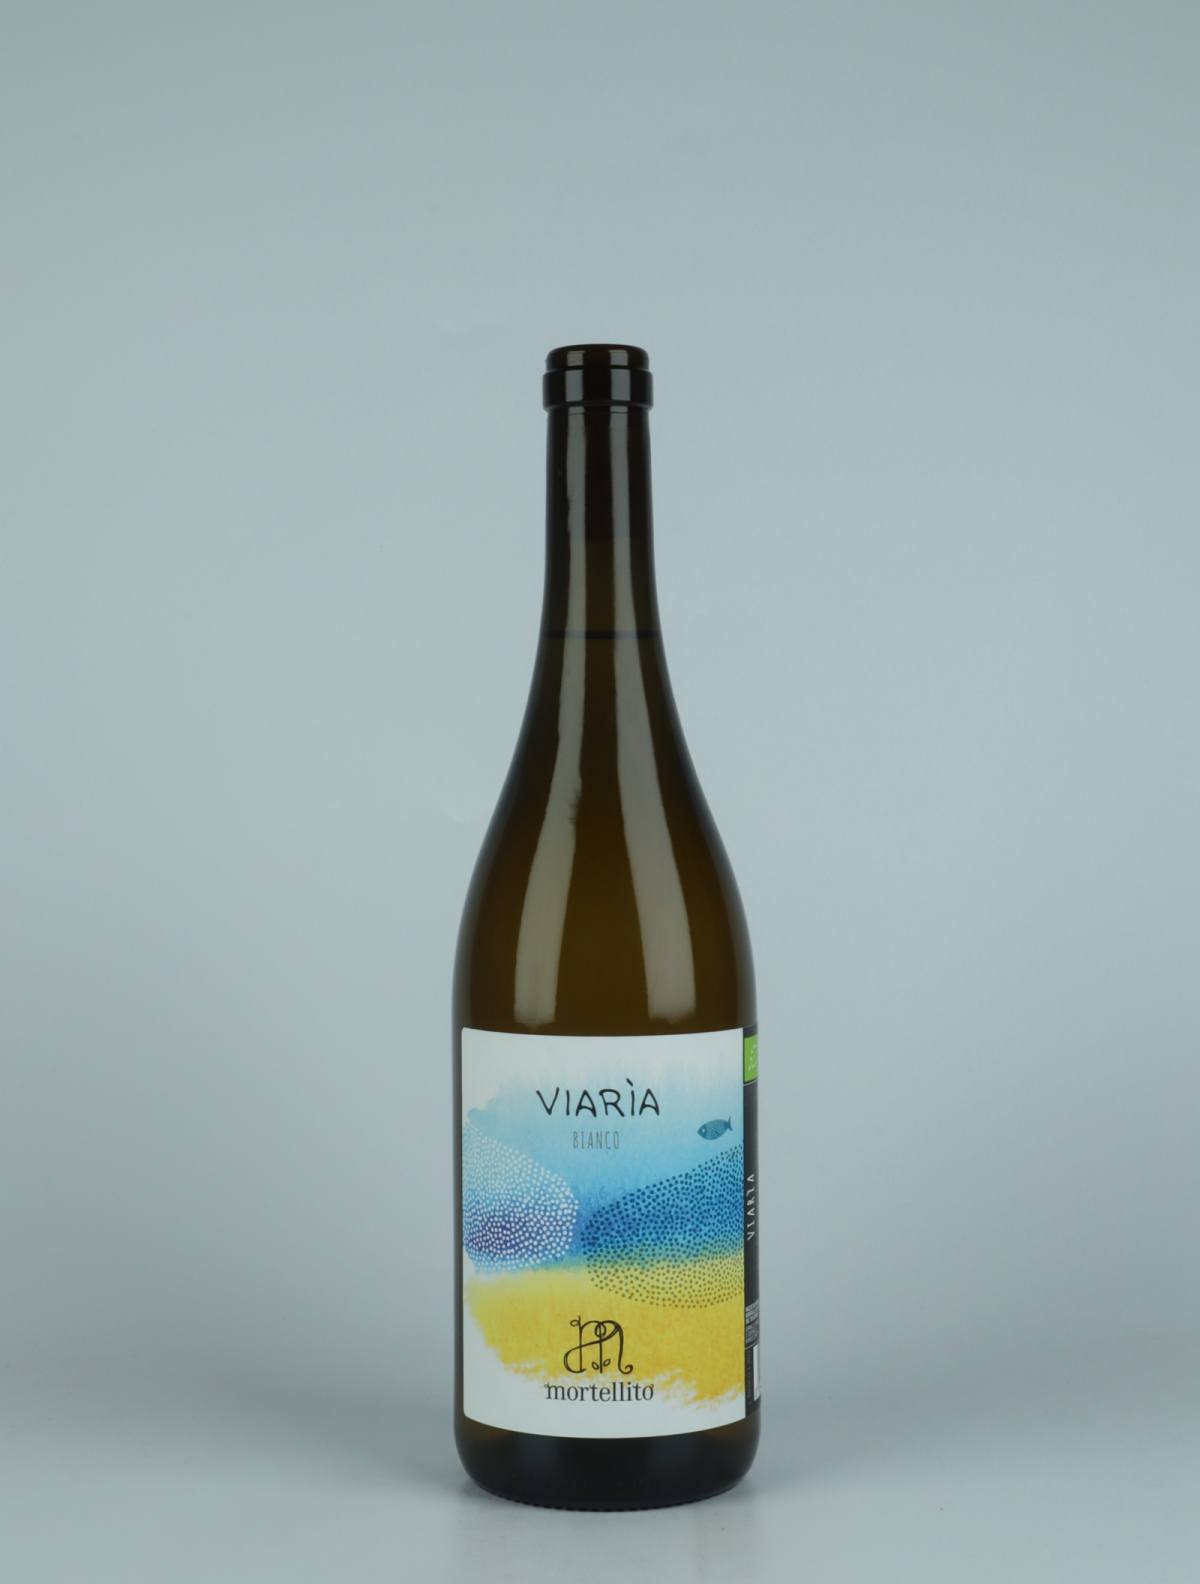 En flaske 2022 Viaria Hvidvin fra Il Mortellito, Sicilien i Italien